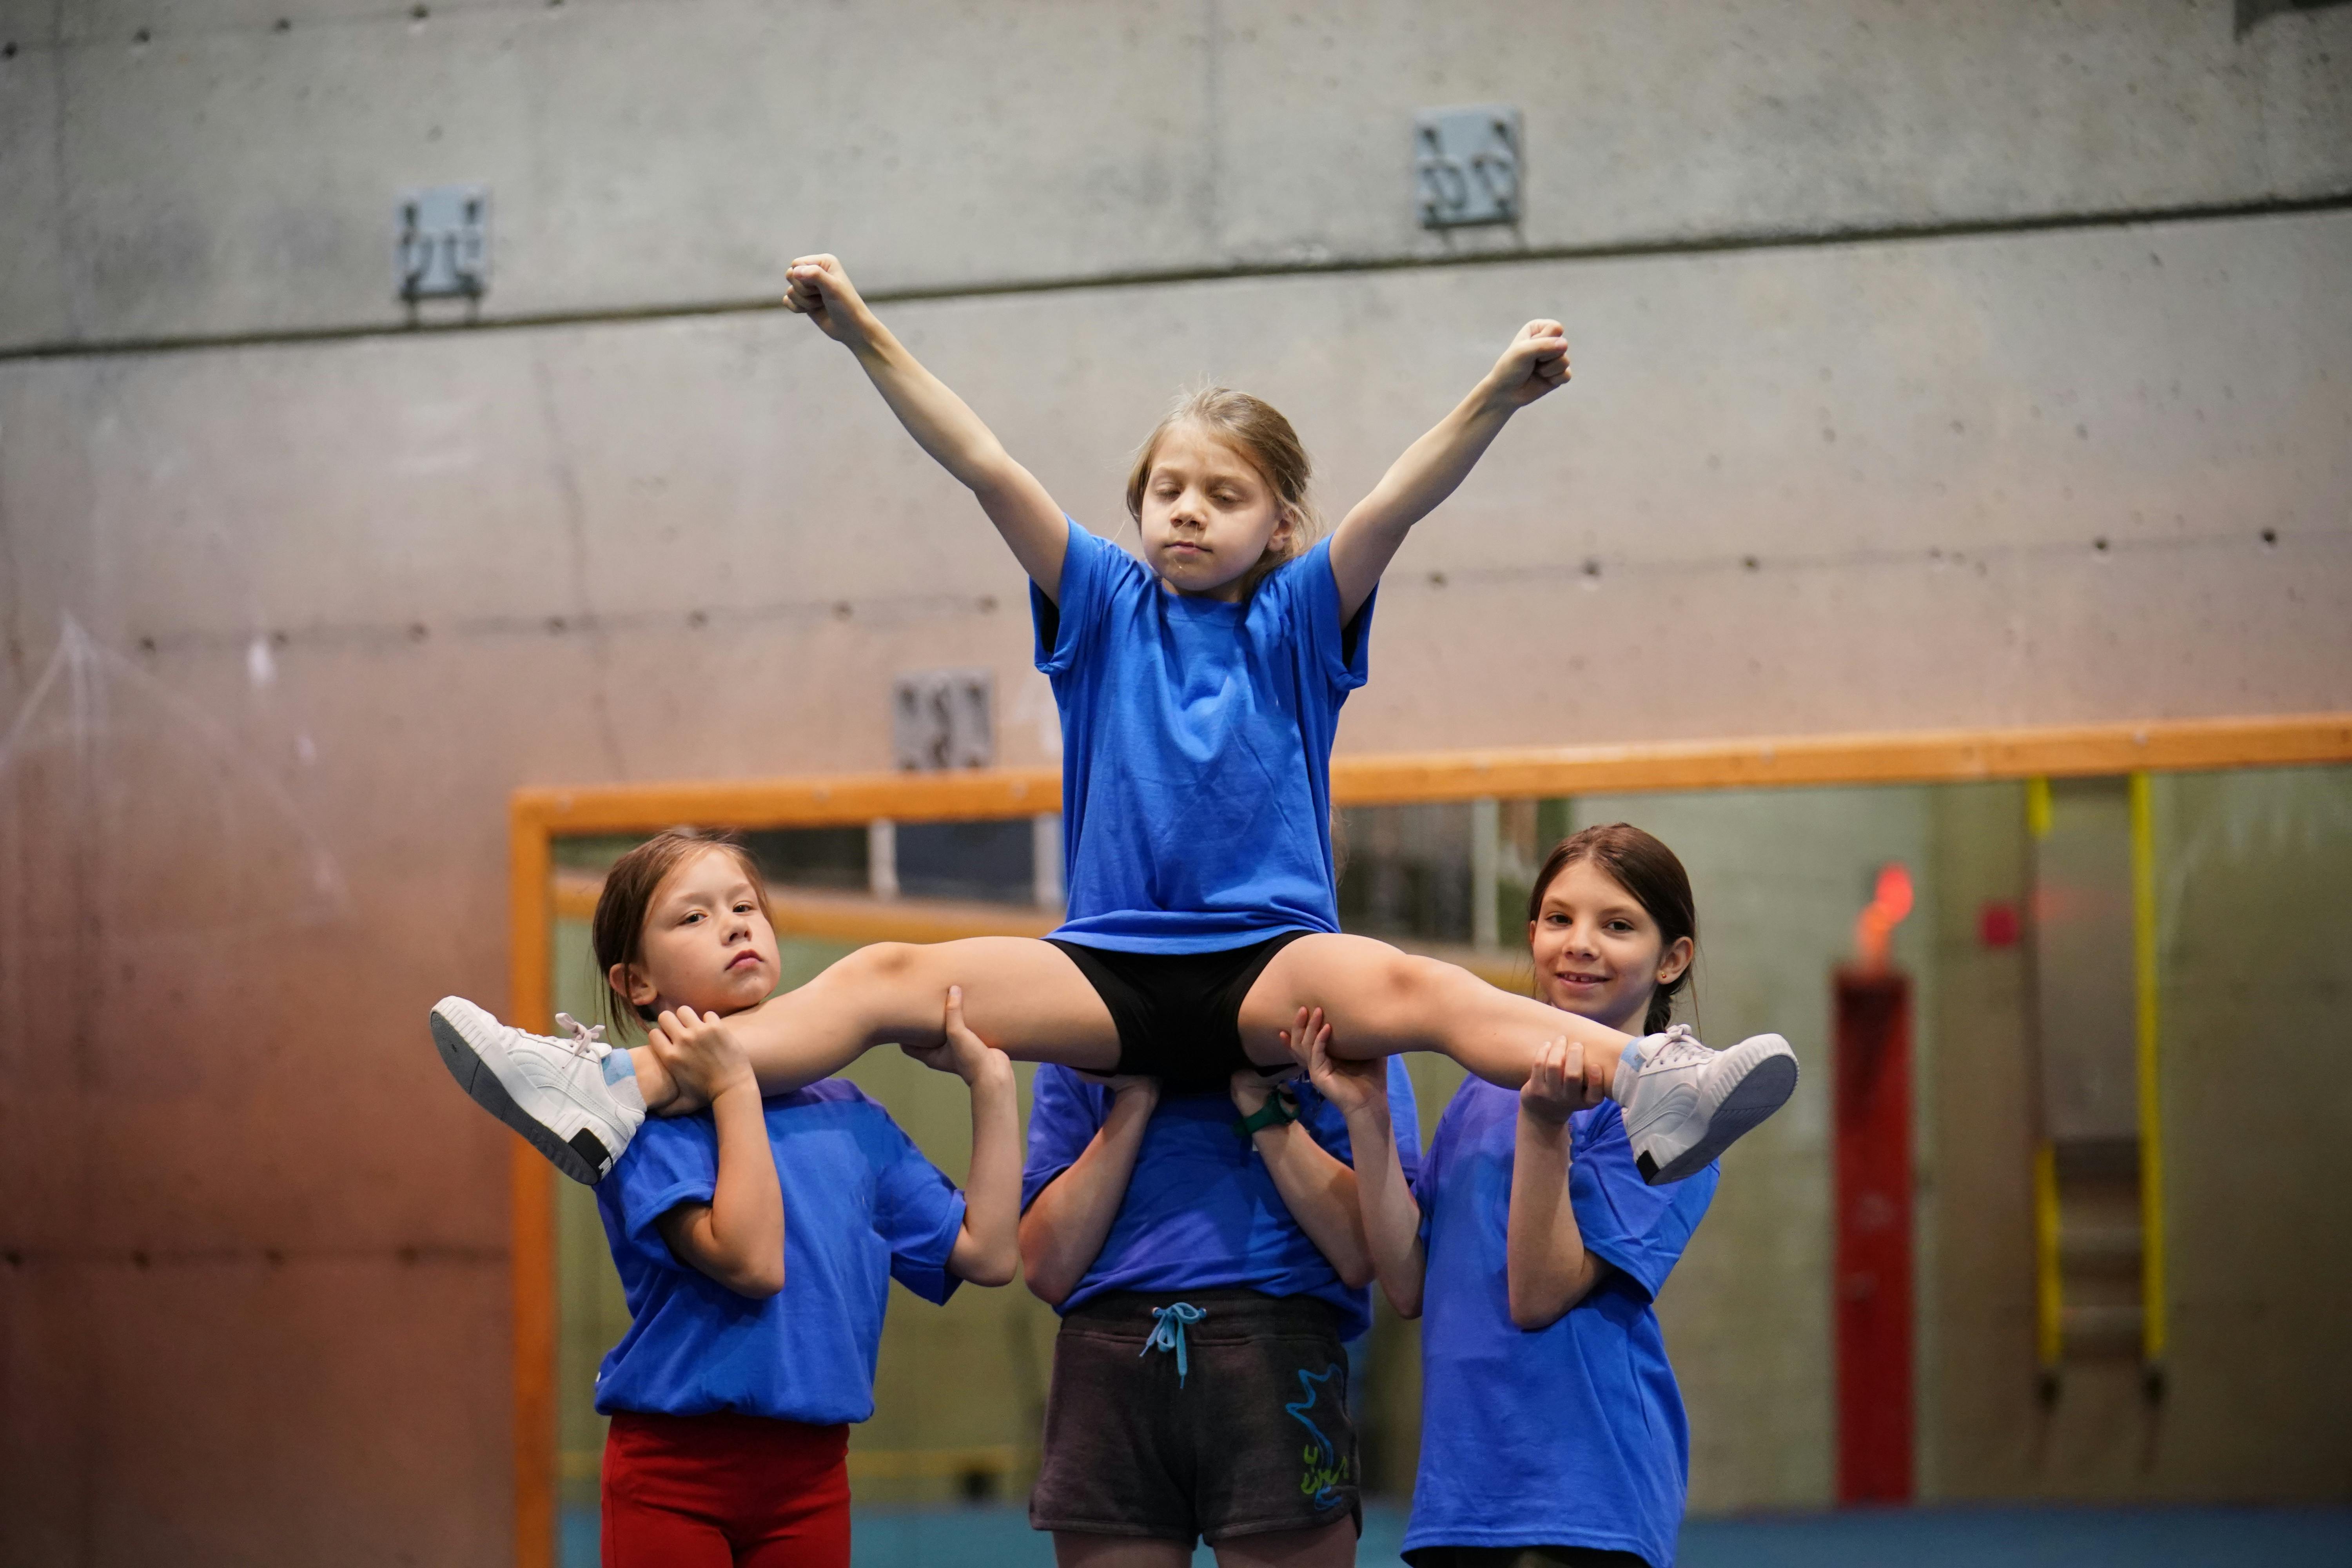 Cheerleading 6 à 8 ans | Activités jeunesse au CEPSUM